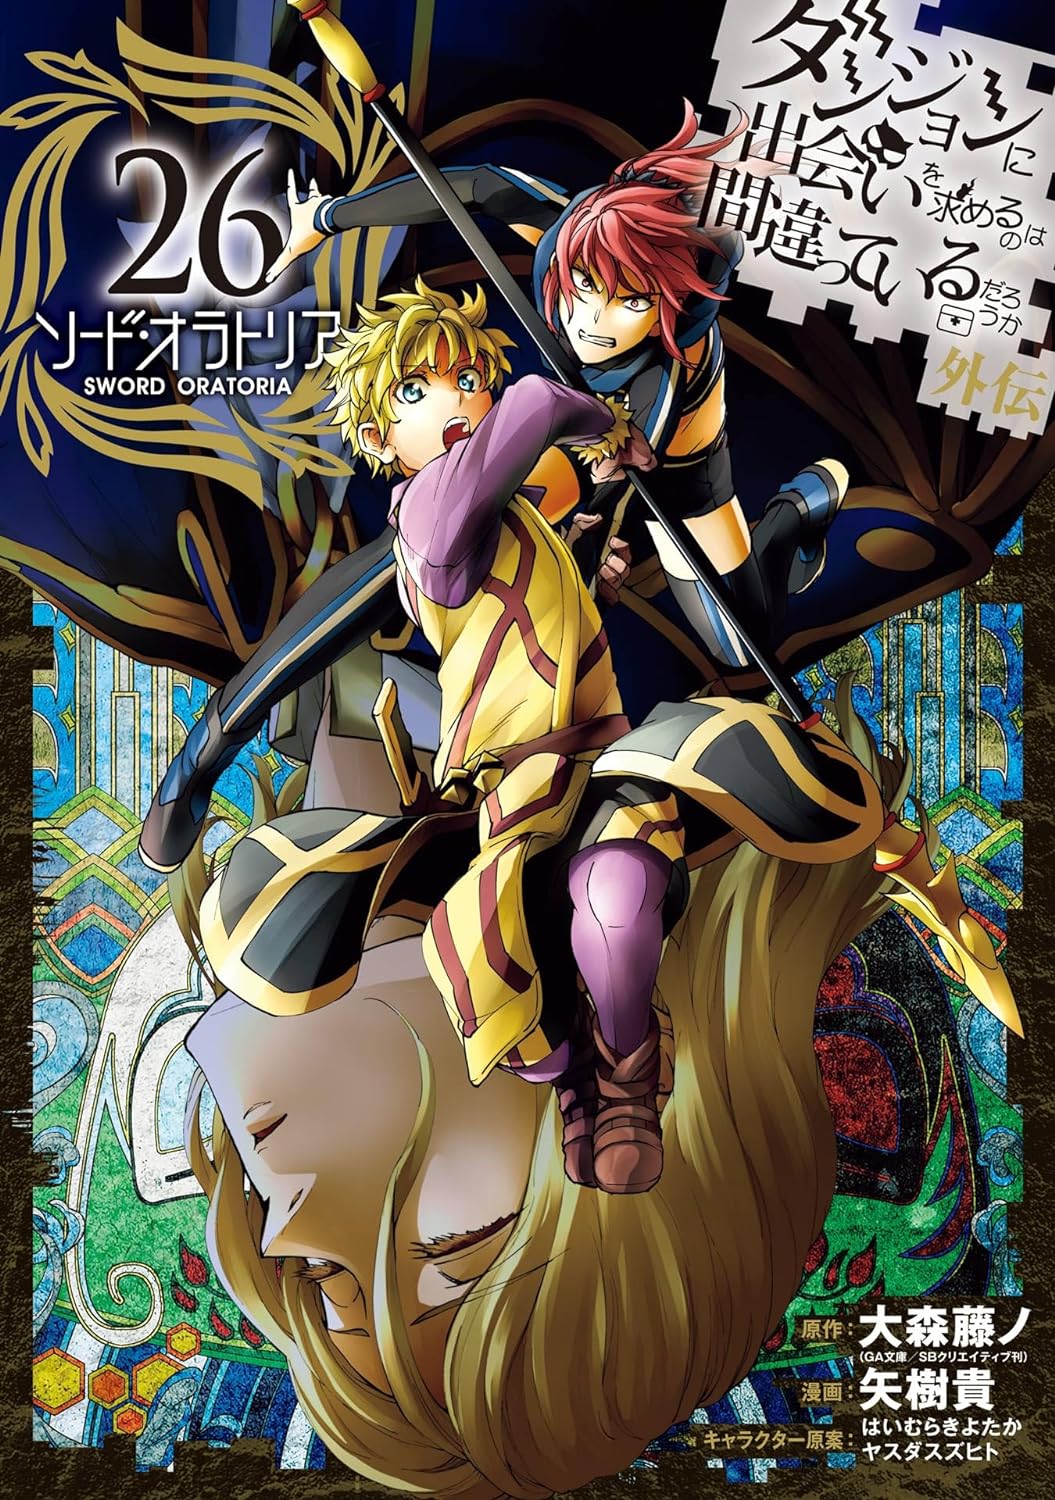 Sword Art Online Light Novel Volume 26